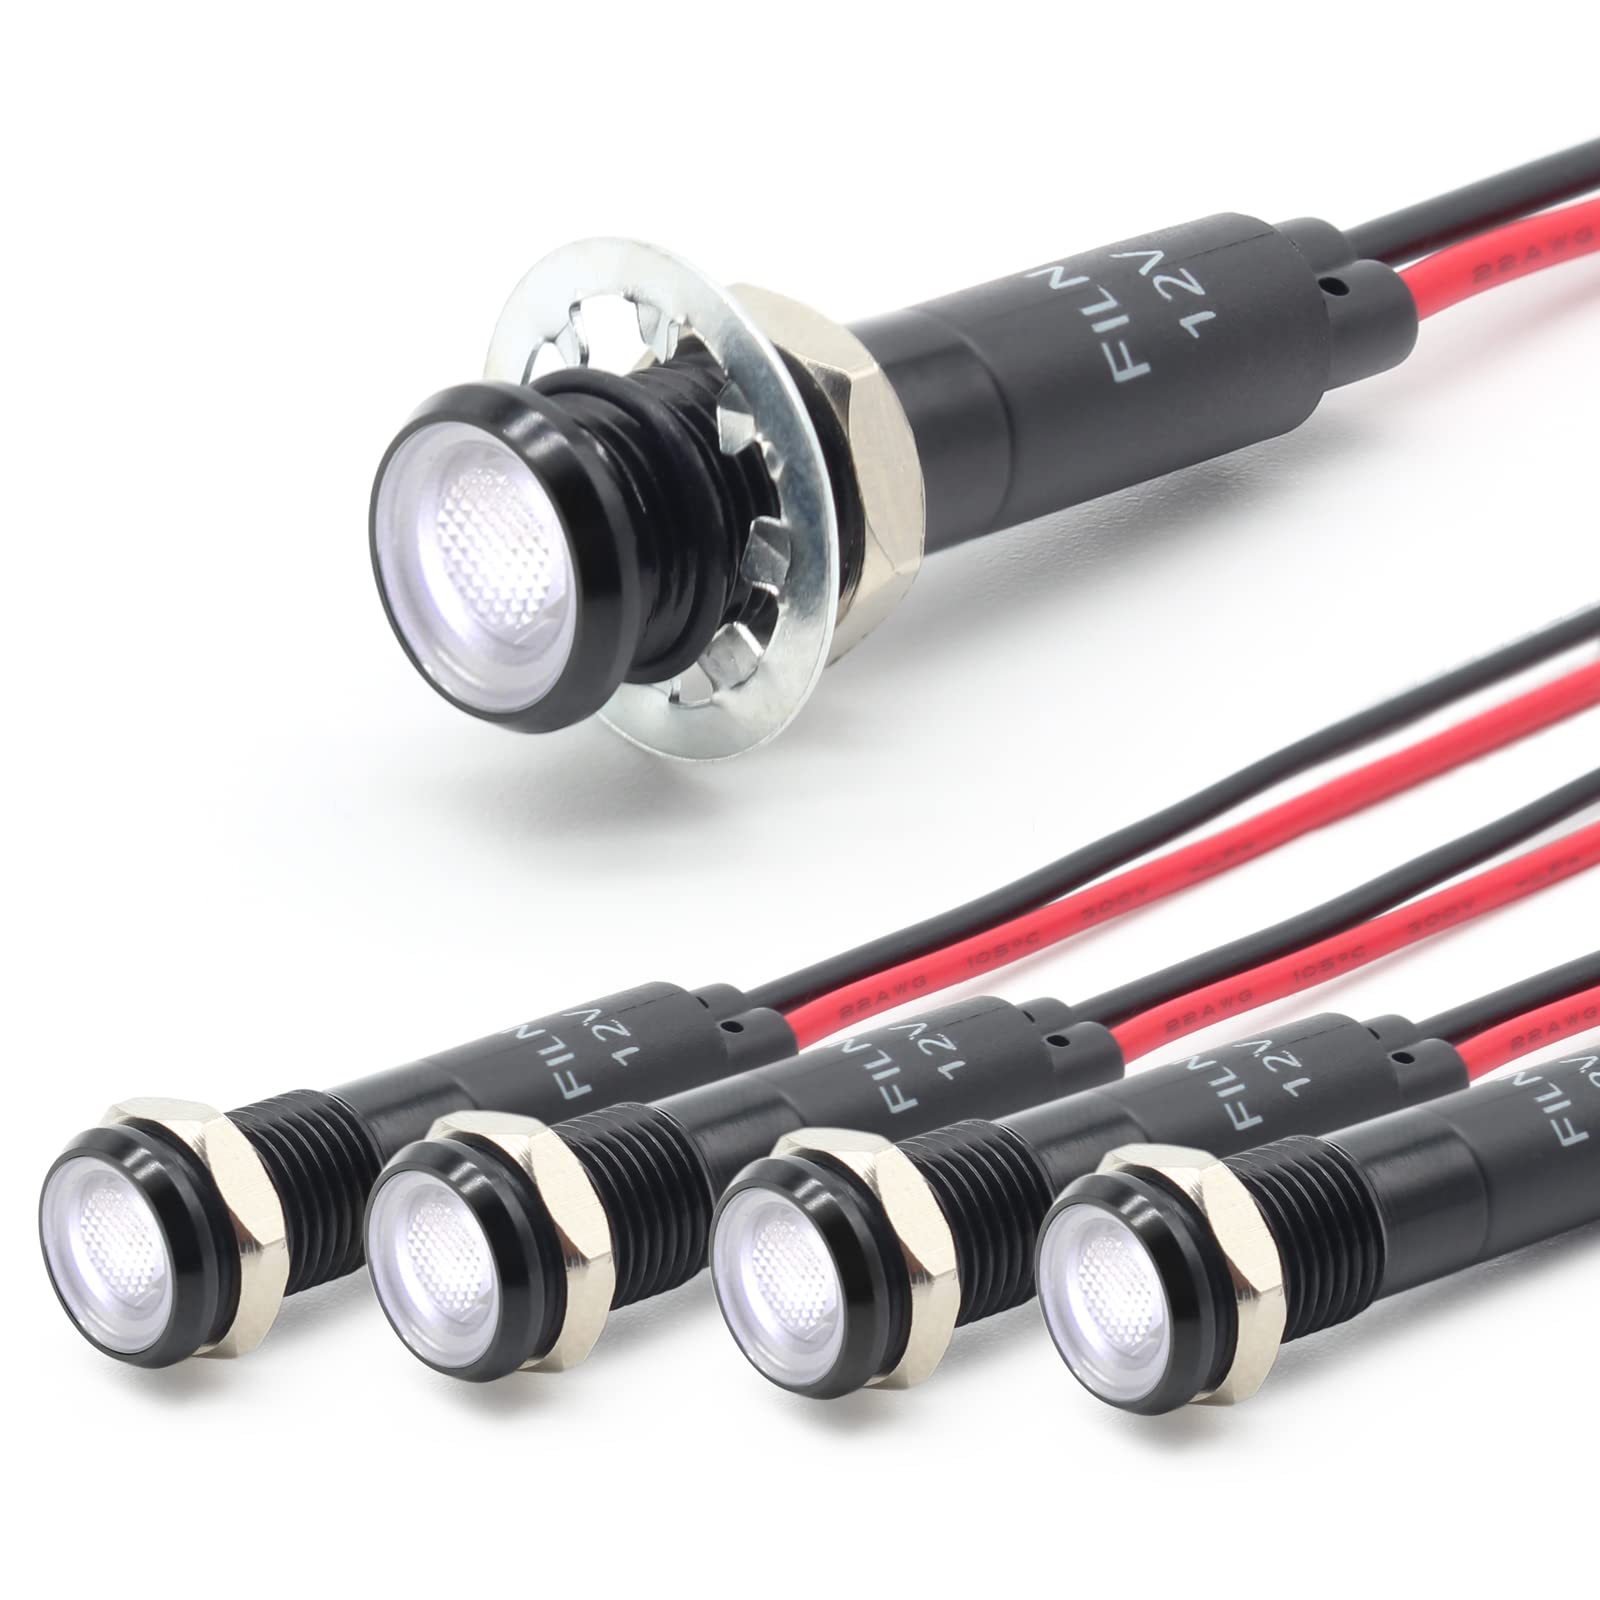 FILN 5 stücke 8mm (5/16 ") 12V LED kontrollleuchte wasserdichte pilot signallampe Meldeleuchte metalltafelleuchten(Schwarz eloxiert,Weiß5stück) von FILN